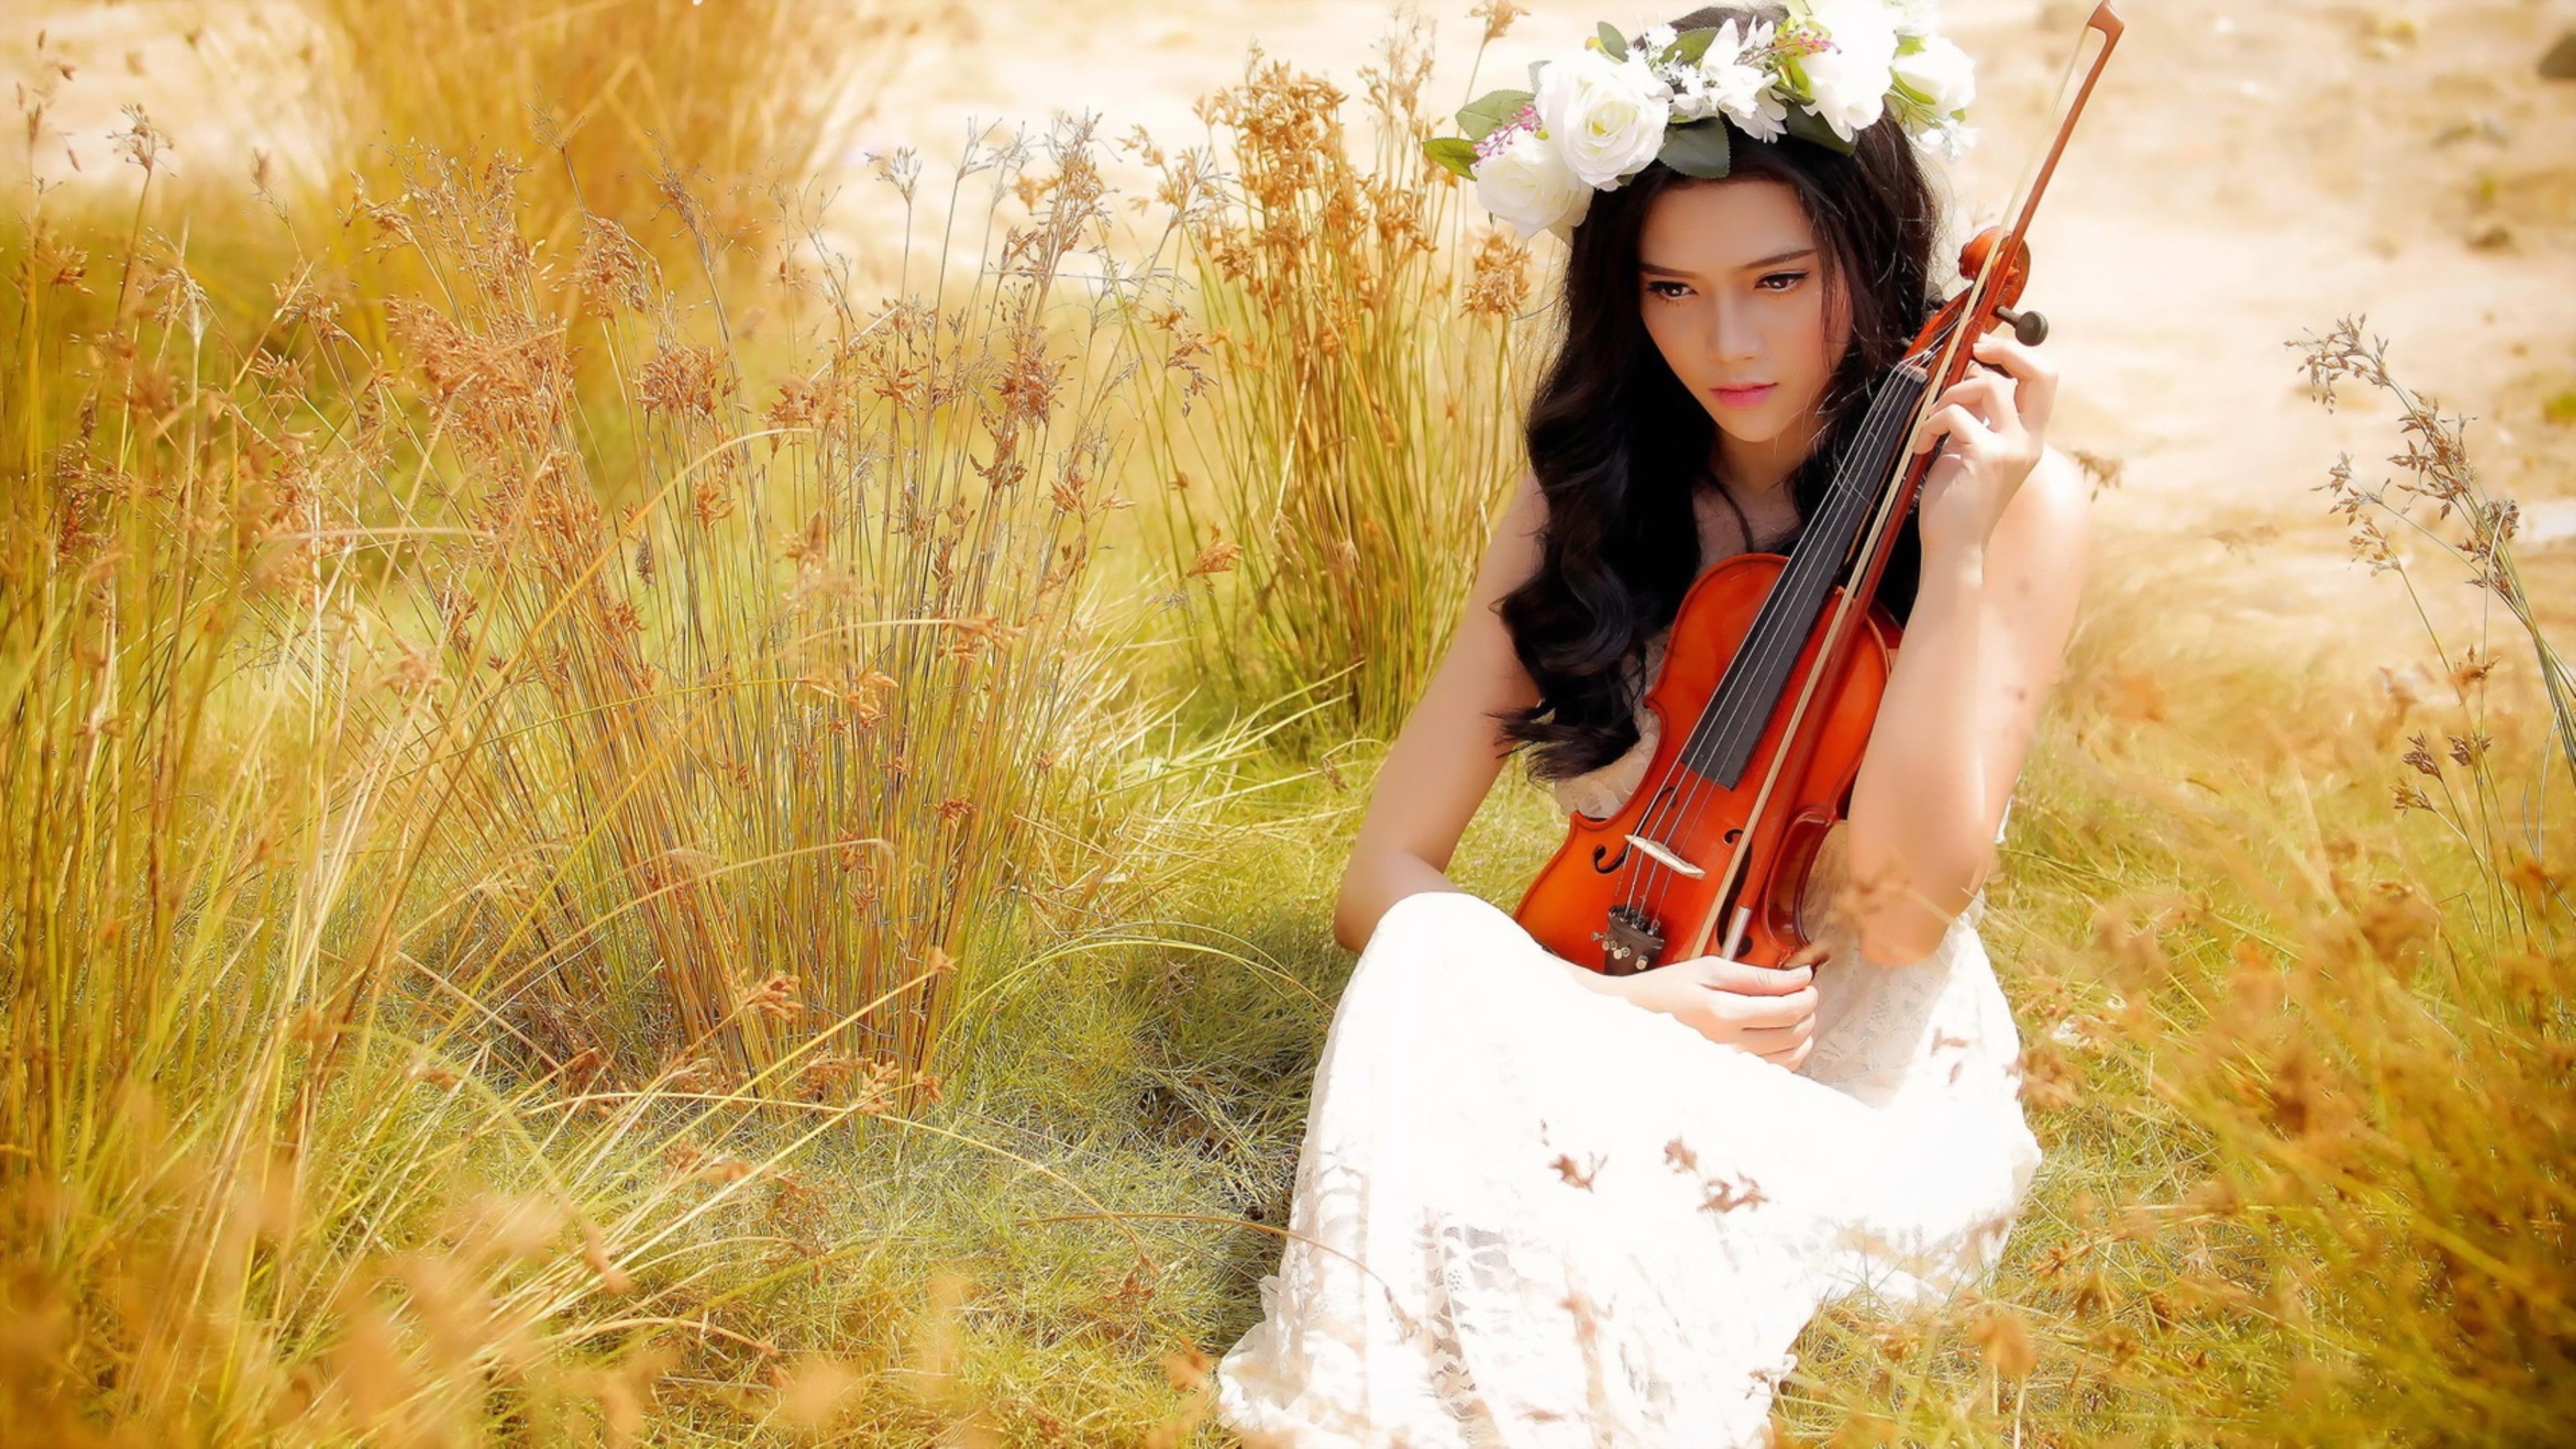 Слушать песню на лету. Девушки со скрипкой. Девушка скрипка природа. Фотосессия со скрипкой. Фотосессия со скрипкой на природе.